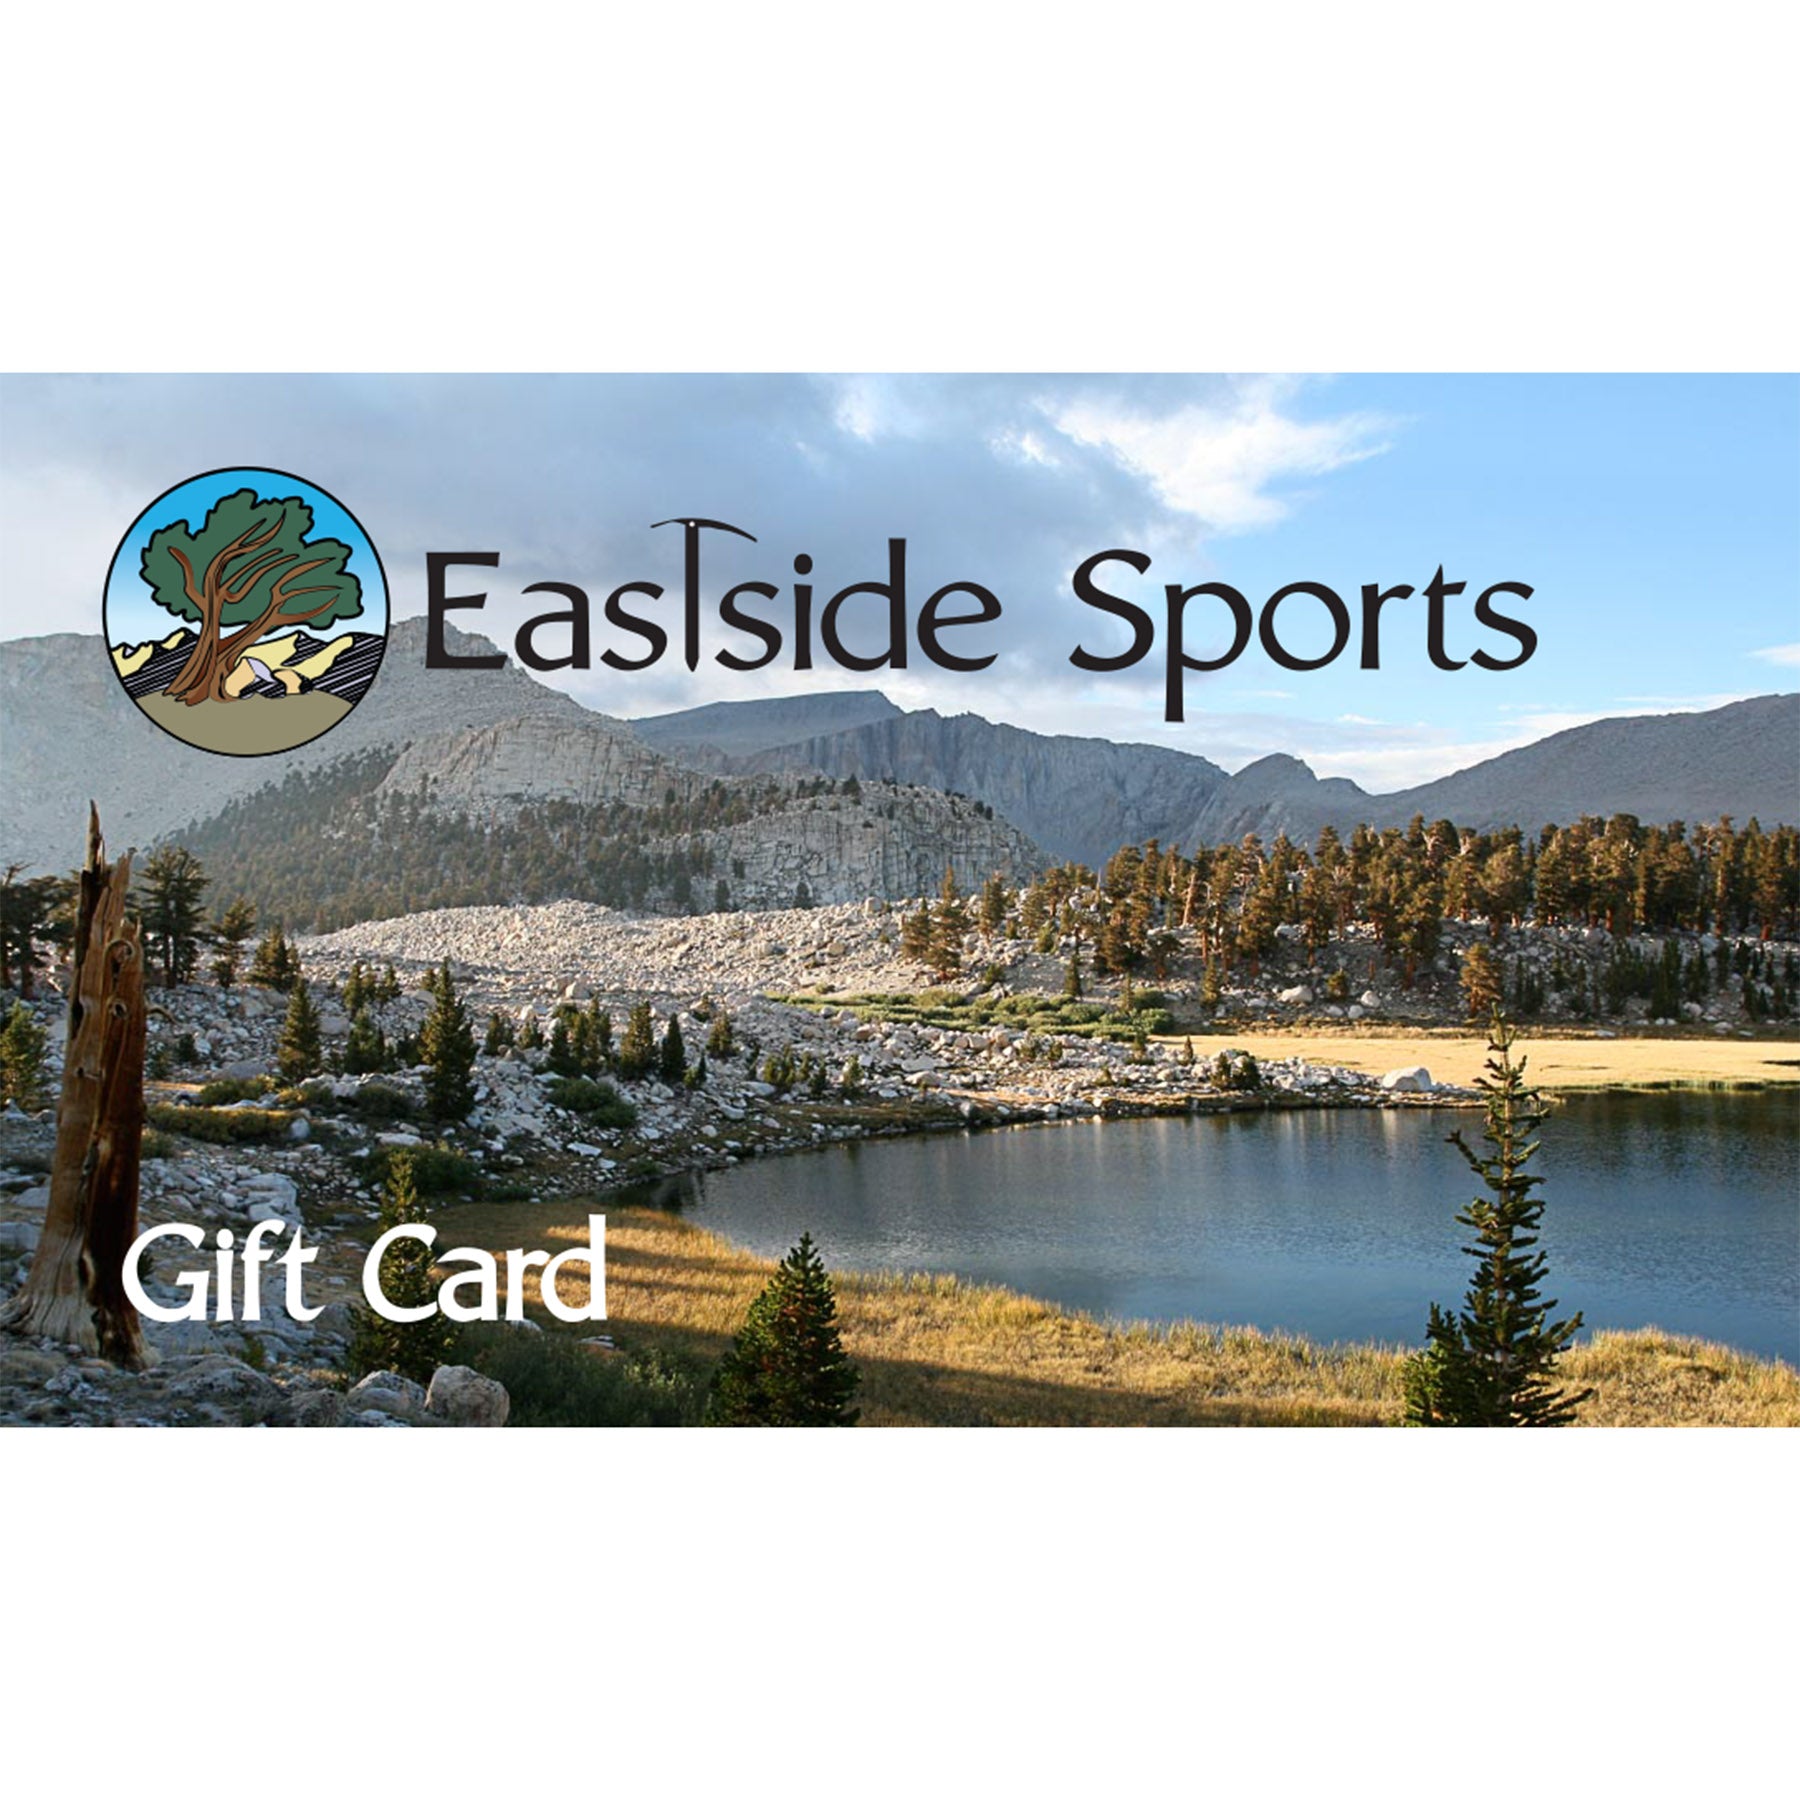 Eastside Sports Gift Card